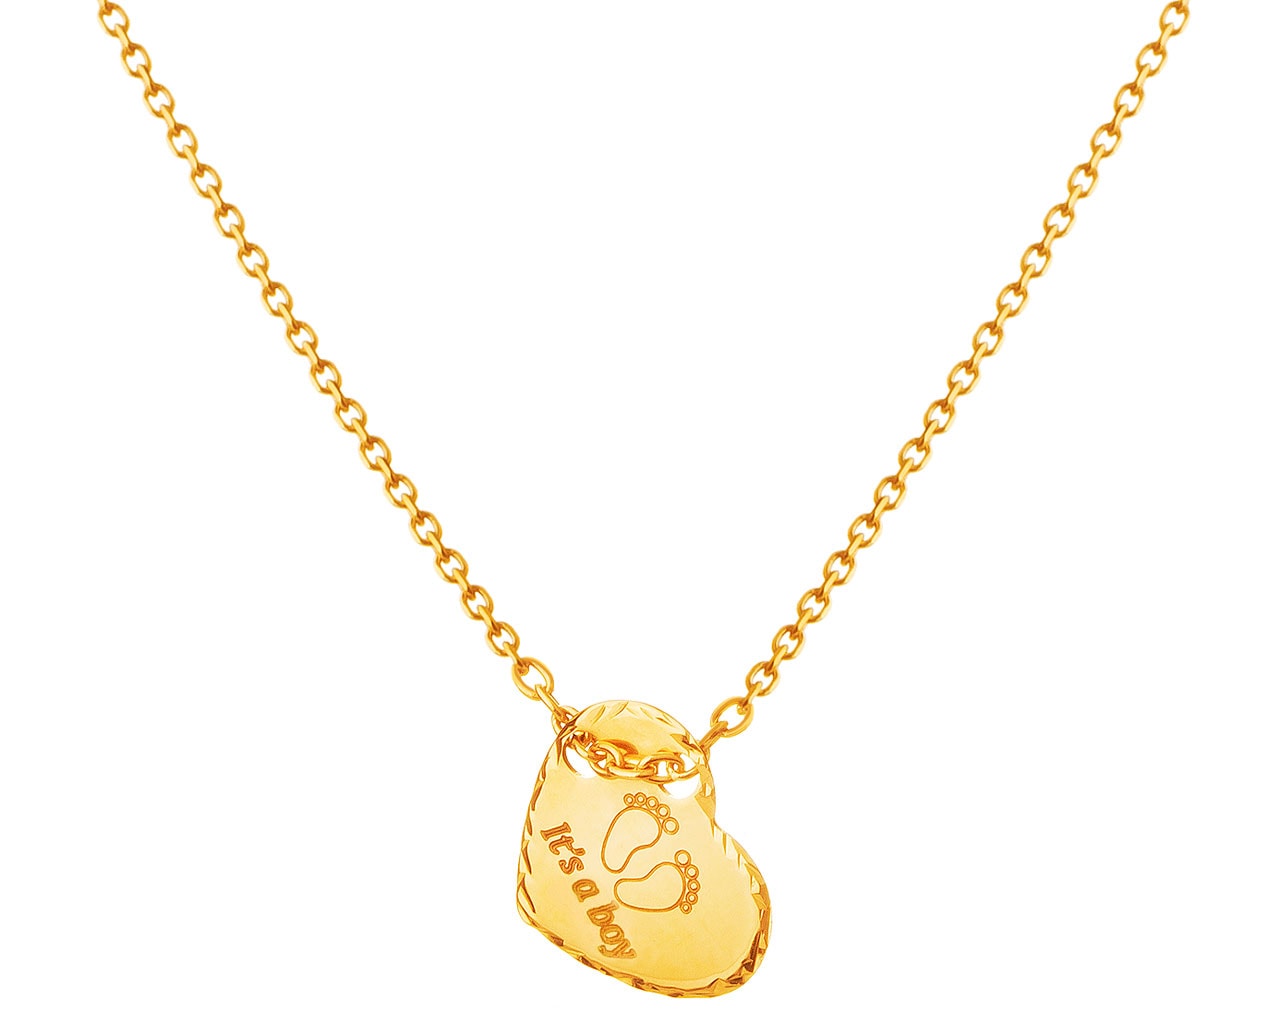 Zlatý náhrdelník, anker - srdce, chodidla, It's a boy